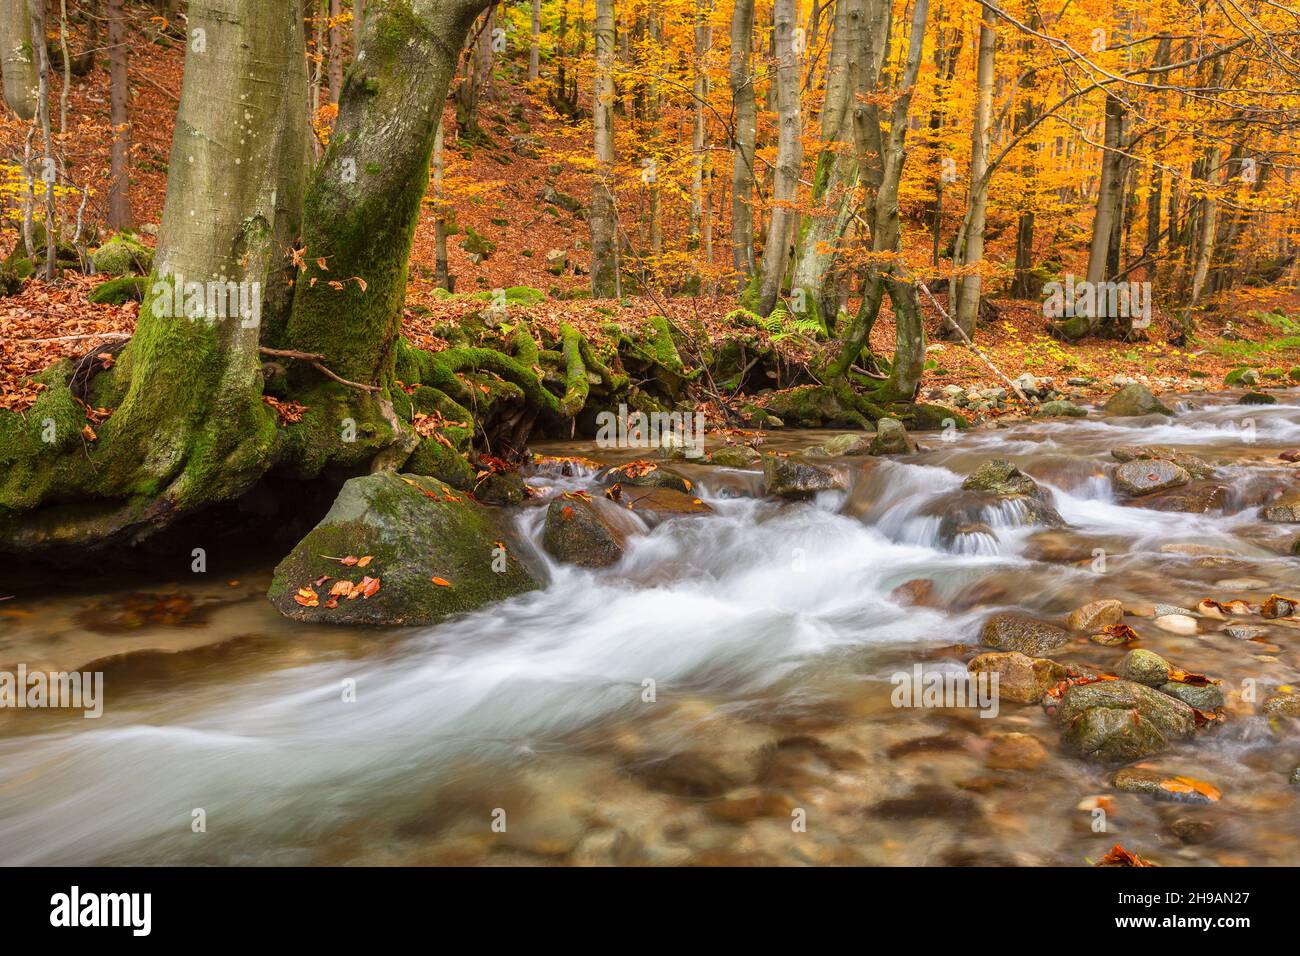 Creek in Mala Fatra national park, Slovakia. Stock Photo